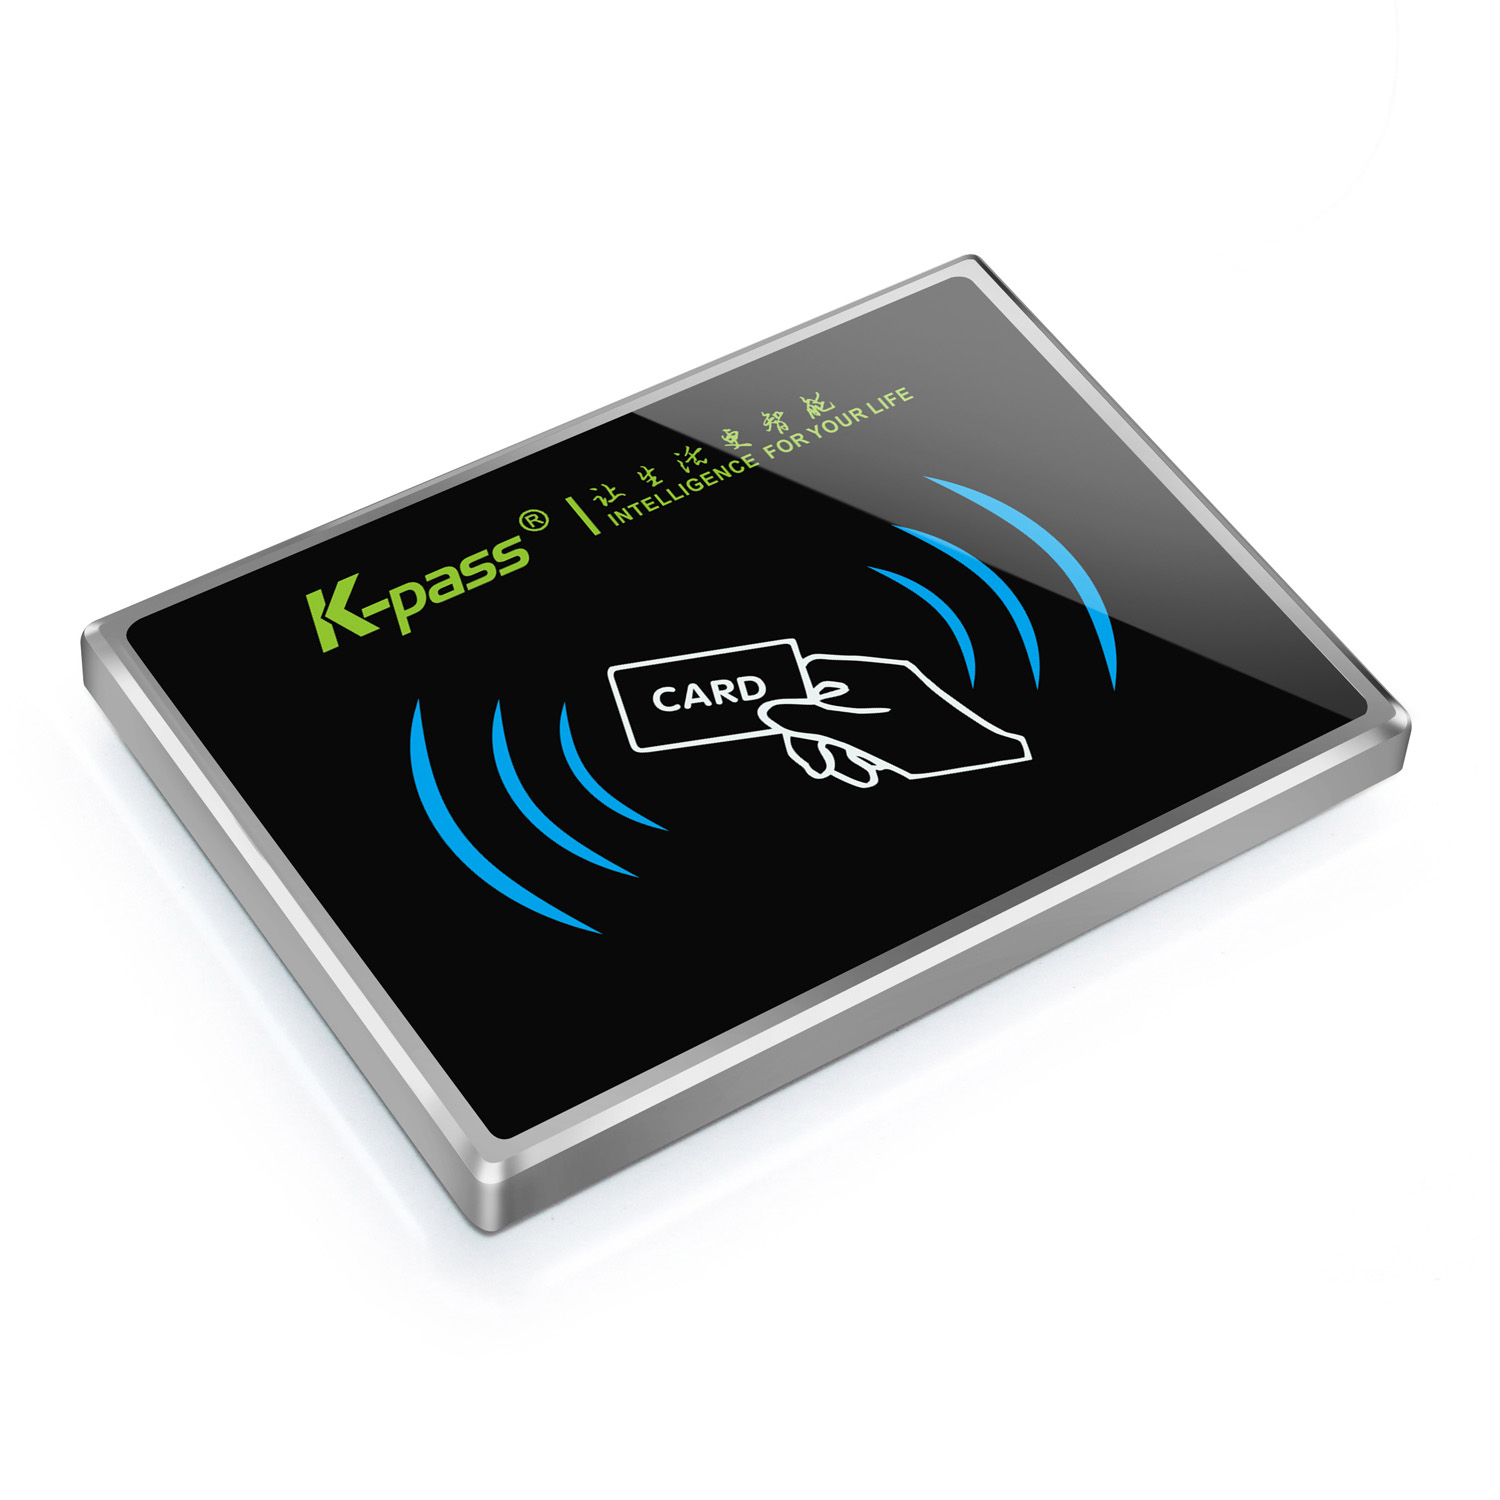 凯帕斯KP-6000M-W1-1电梯刷卡超薄型金属梯控读卡器超薄型金属梯控读卡器|超薄梯控